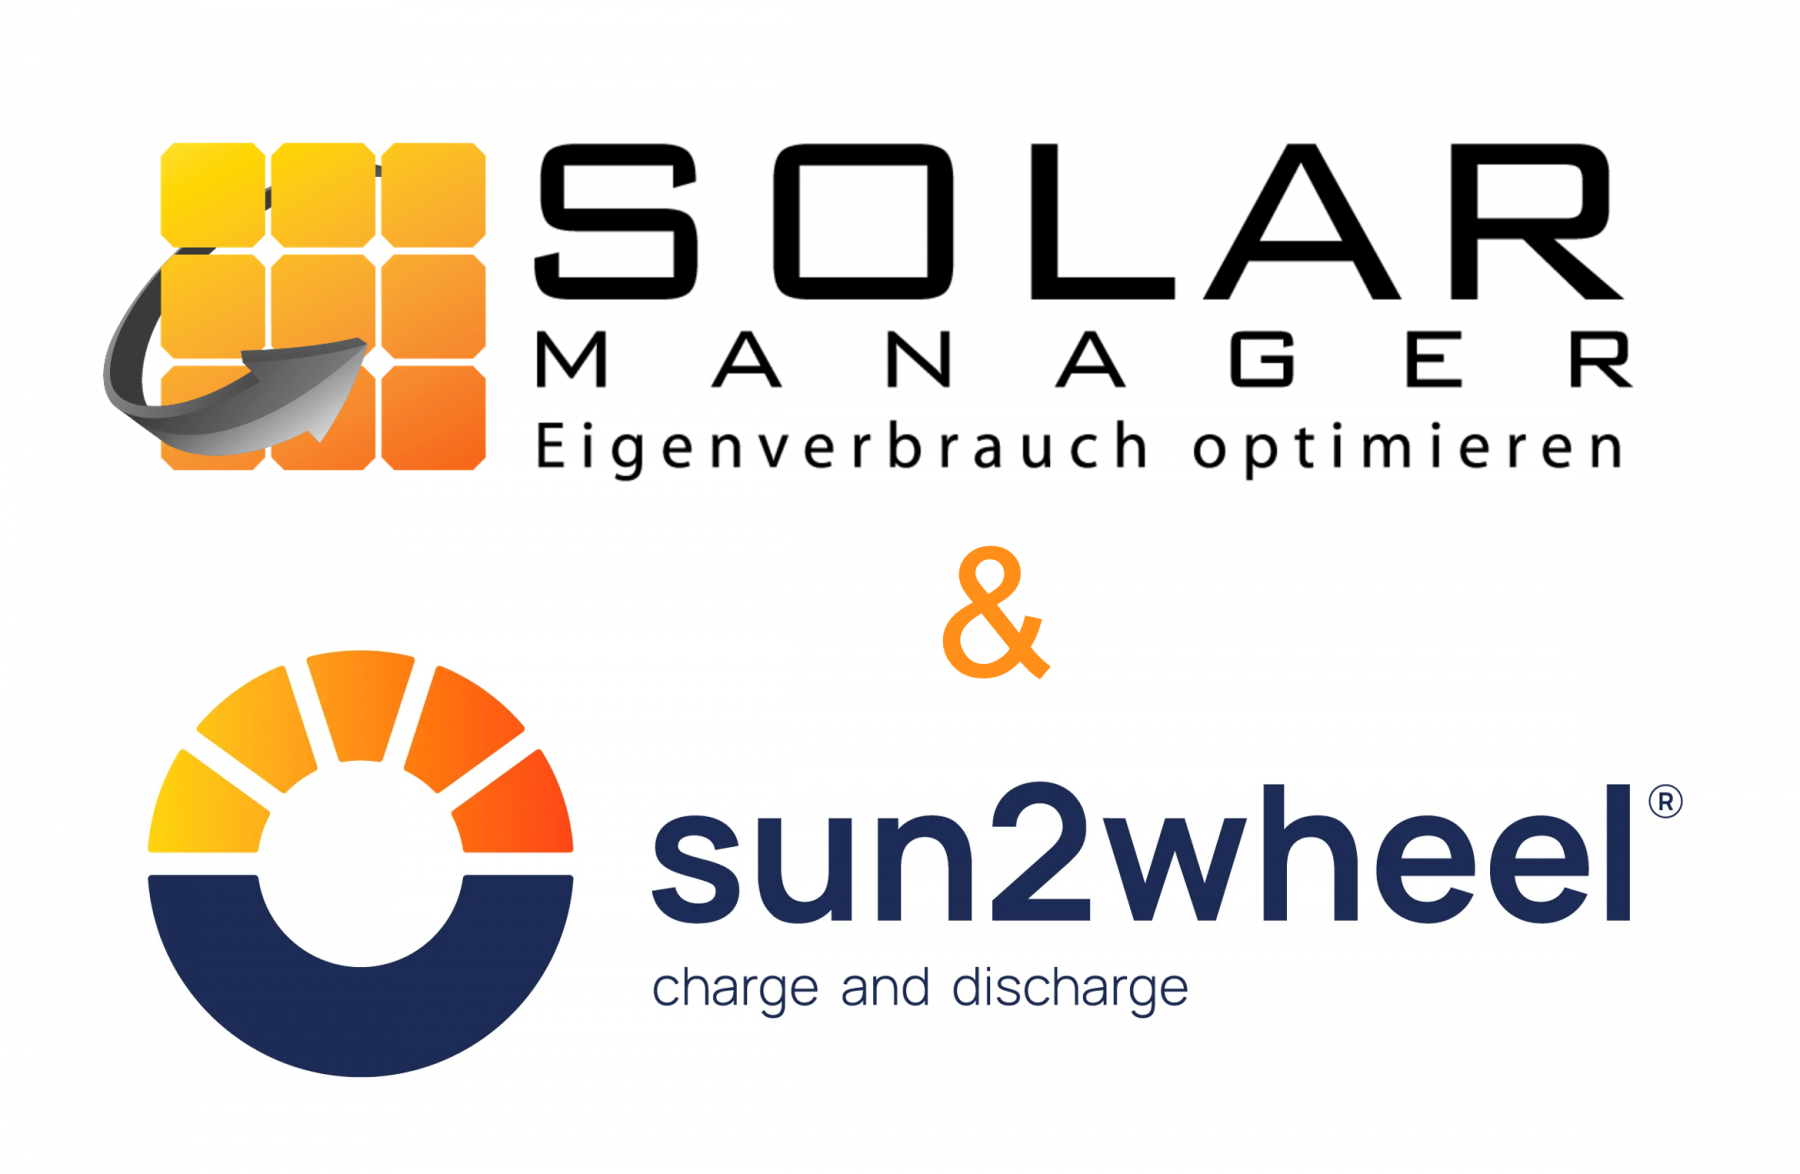 sun2wheel | Nouveau partenariat avec Solar Manager